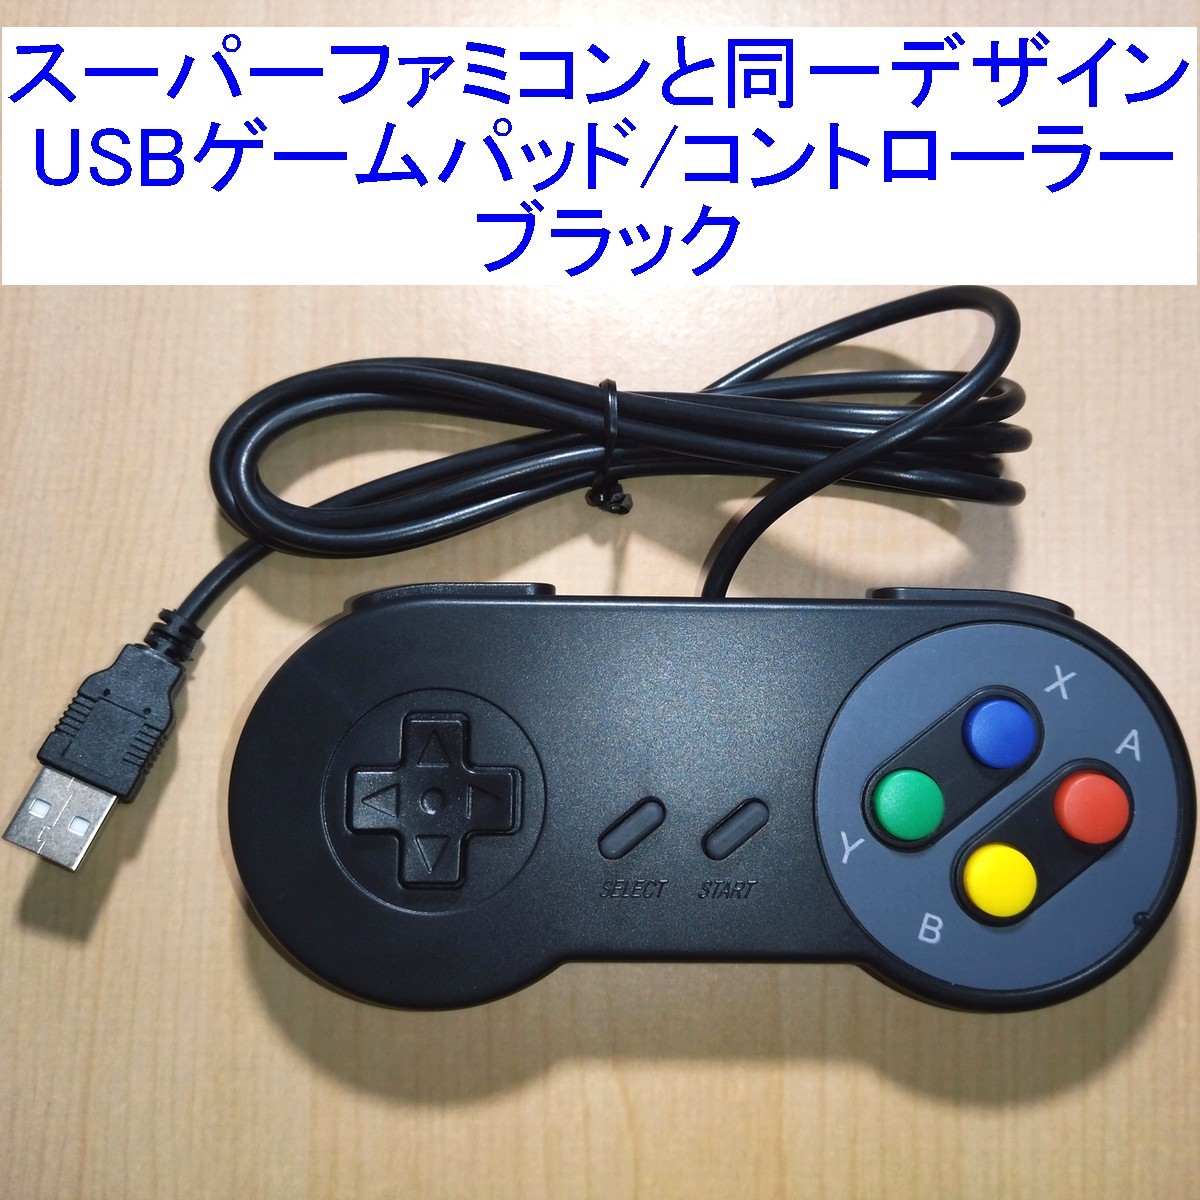 【送料込/即決】スーパーファミコン(SFC)と同じデザインのUSBコントローラー（USBゲームパッド） ブラック 新品_画像1